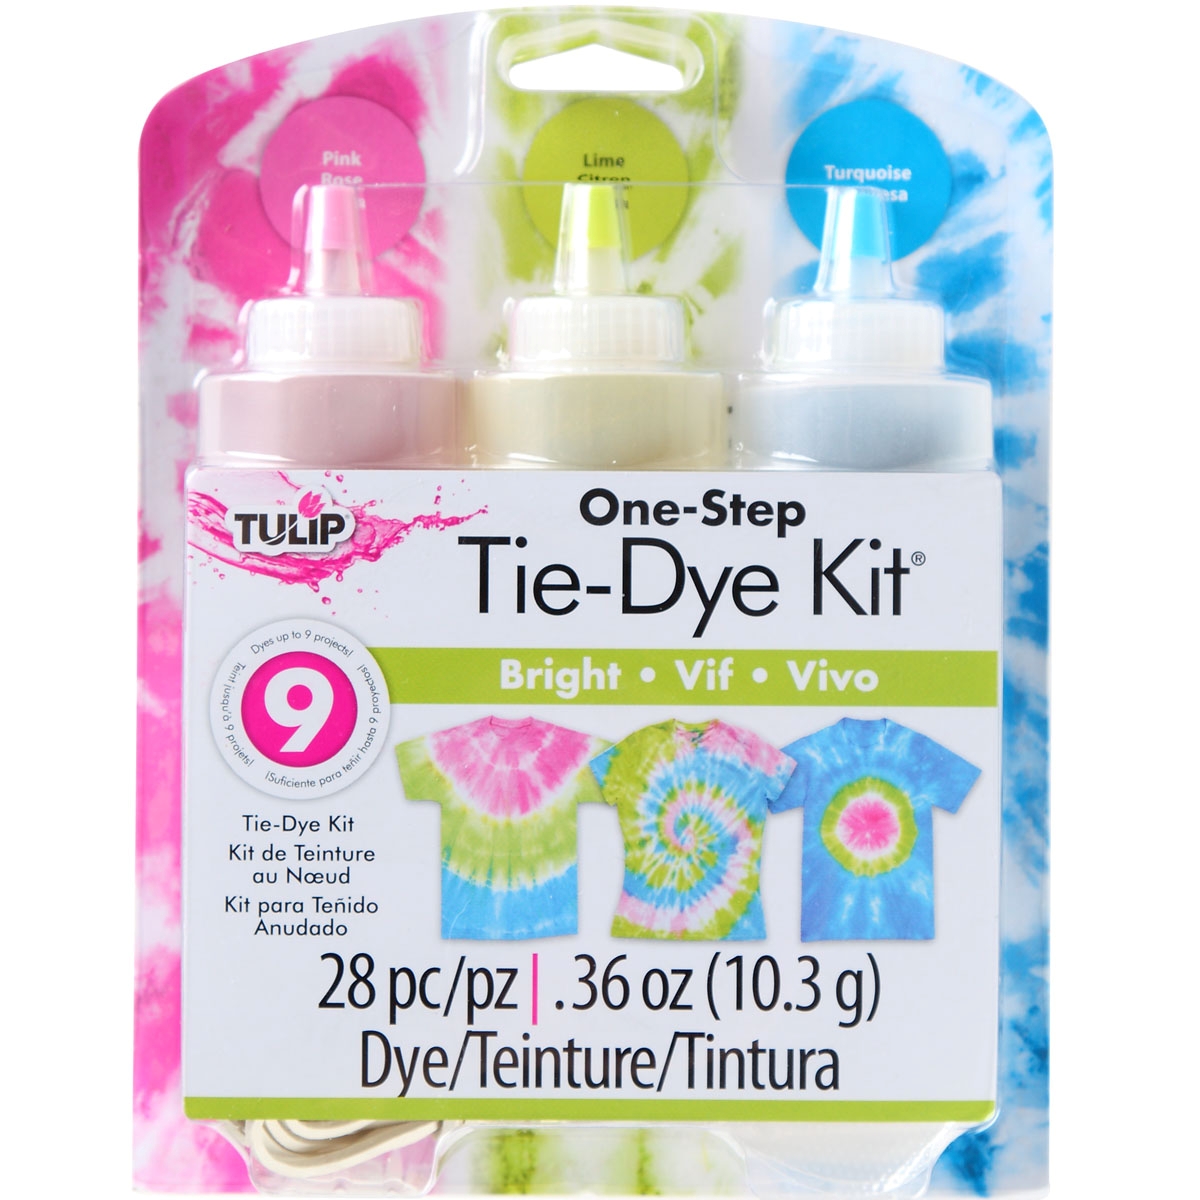 DYLON Dye, Rit Fabric Dye, Tulip Fabric Dye or DyeMore Synthetic Fiber Dye